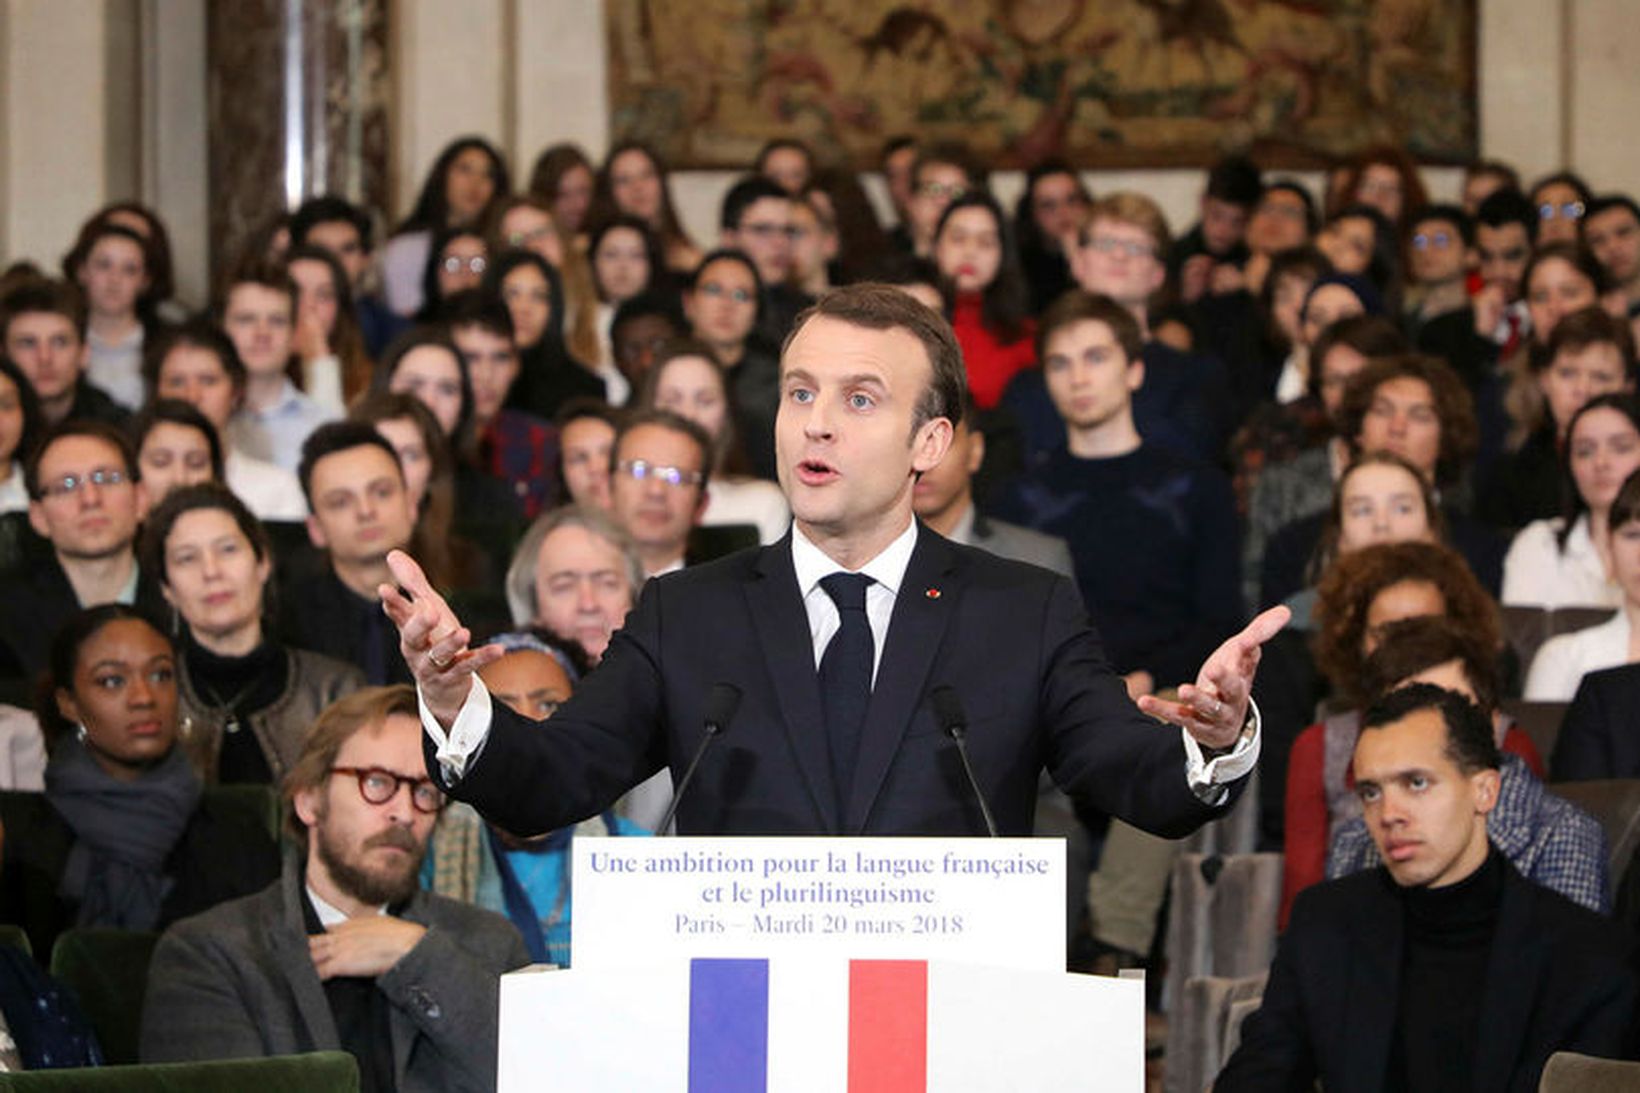 Emmanuel Macron Frakklandsforseti kynnir stefnu sína um útbreiðslu franskrar tungu.